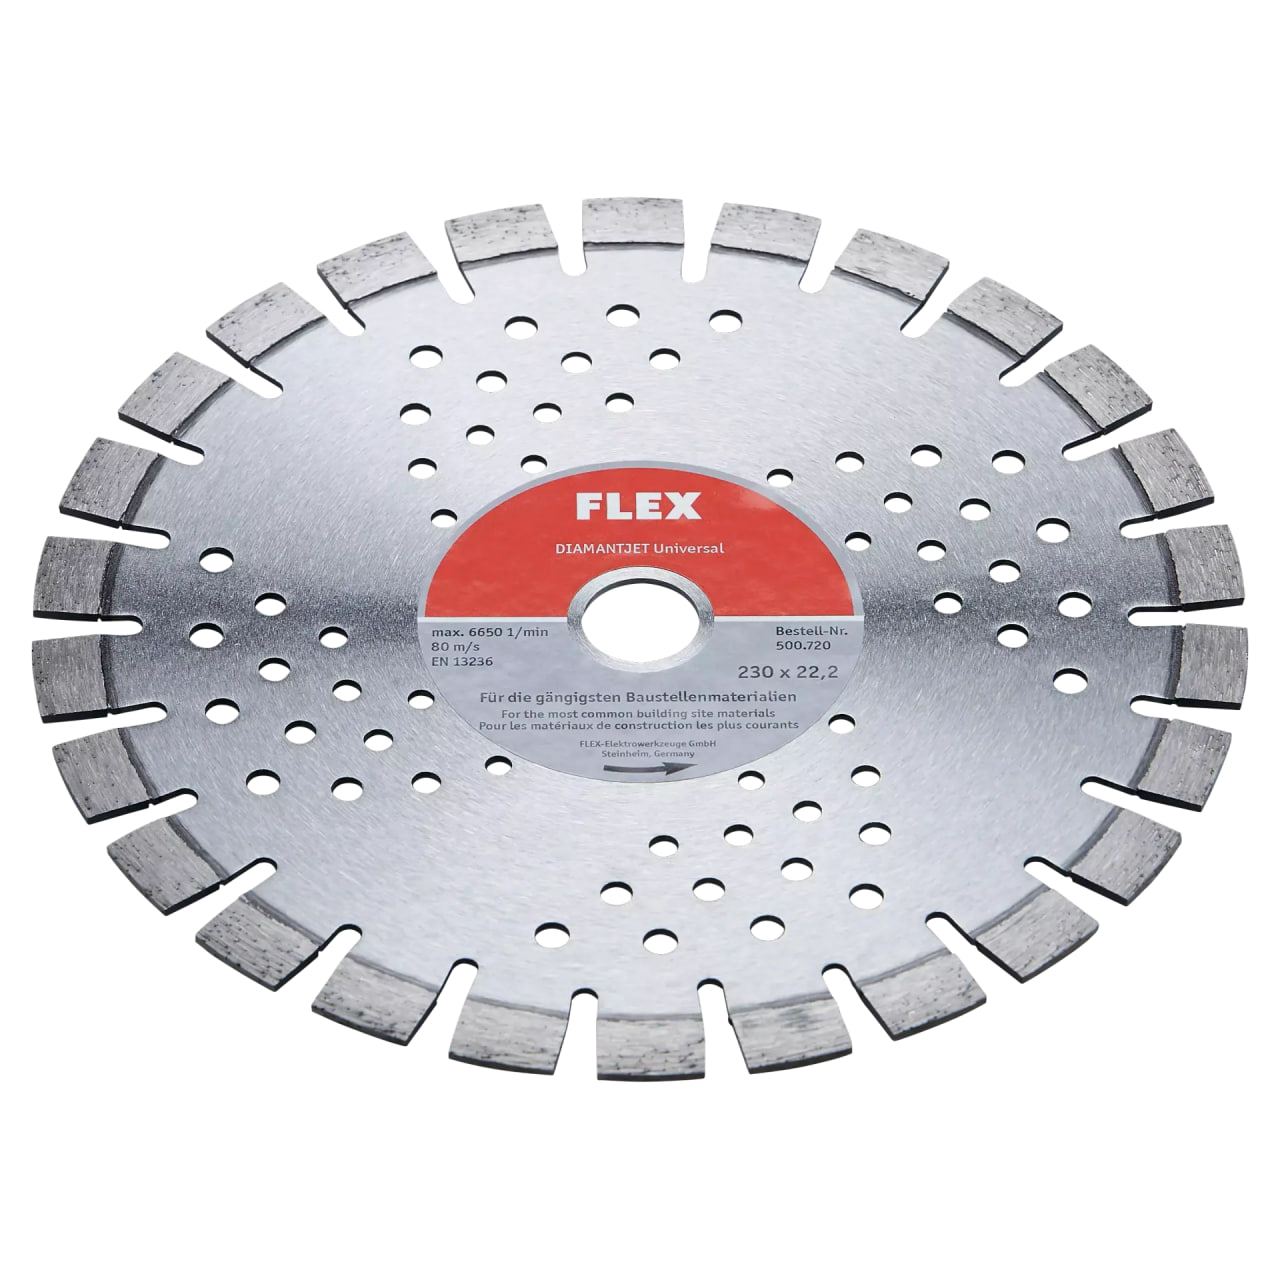 Алмазный отрезной диск, универсальный Flex D-TCS U 230x22,2, 500720 диск отрезной алмазный универсальный hammer flex 206 104 db sg 30688